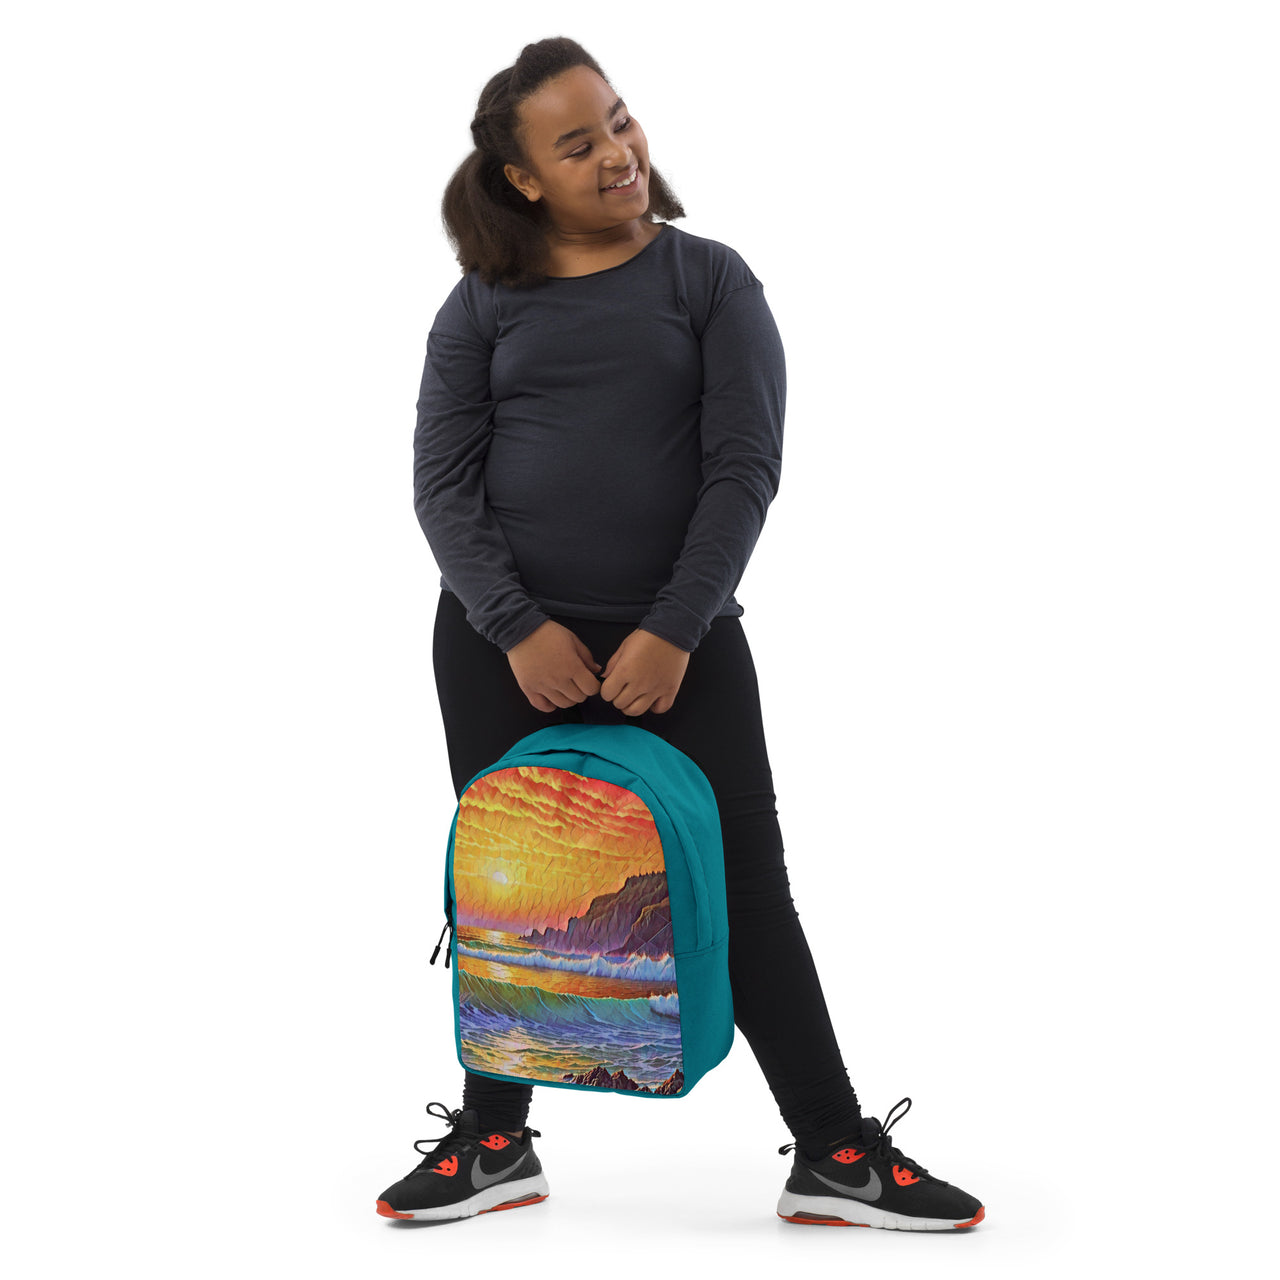 Oregon Coast Sunset - Digital Art - Minimalist Backpack